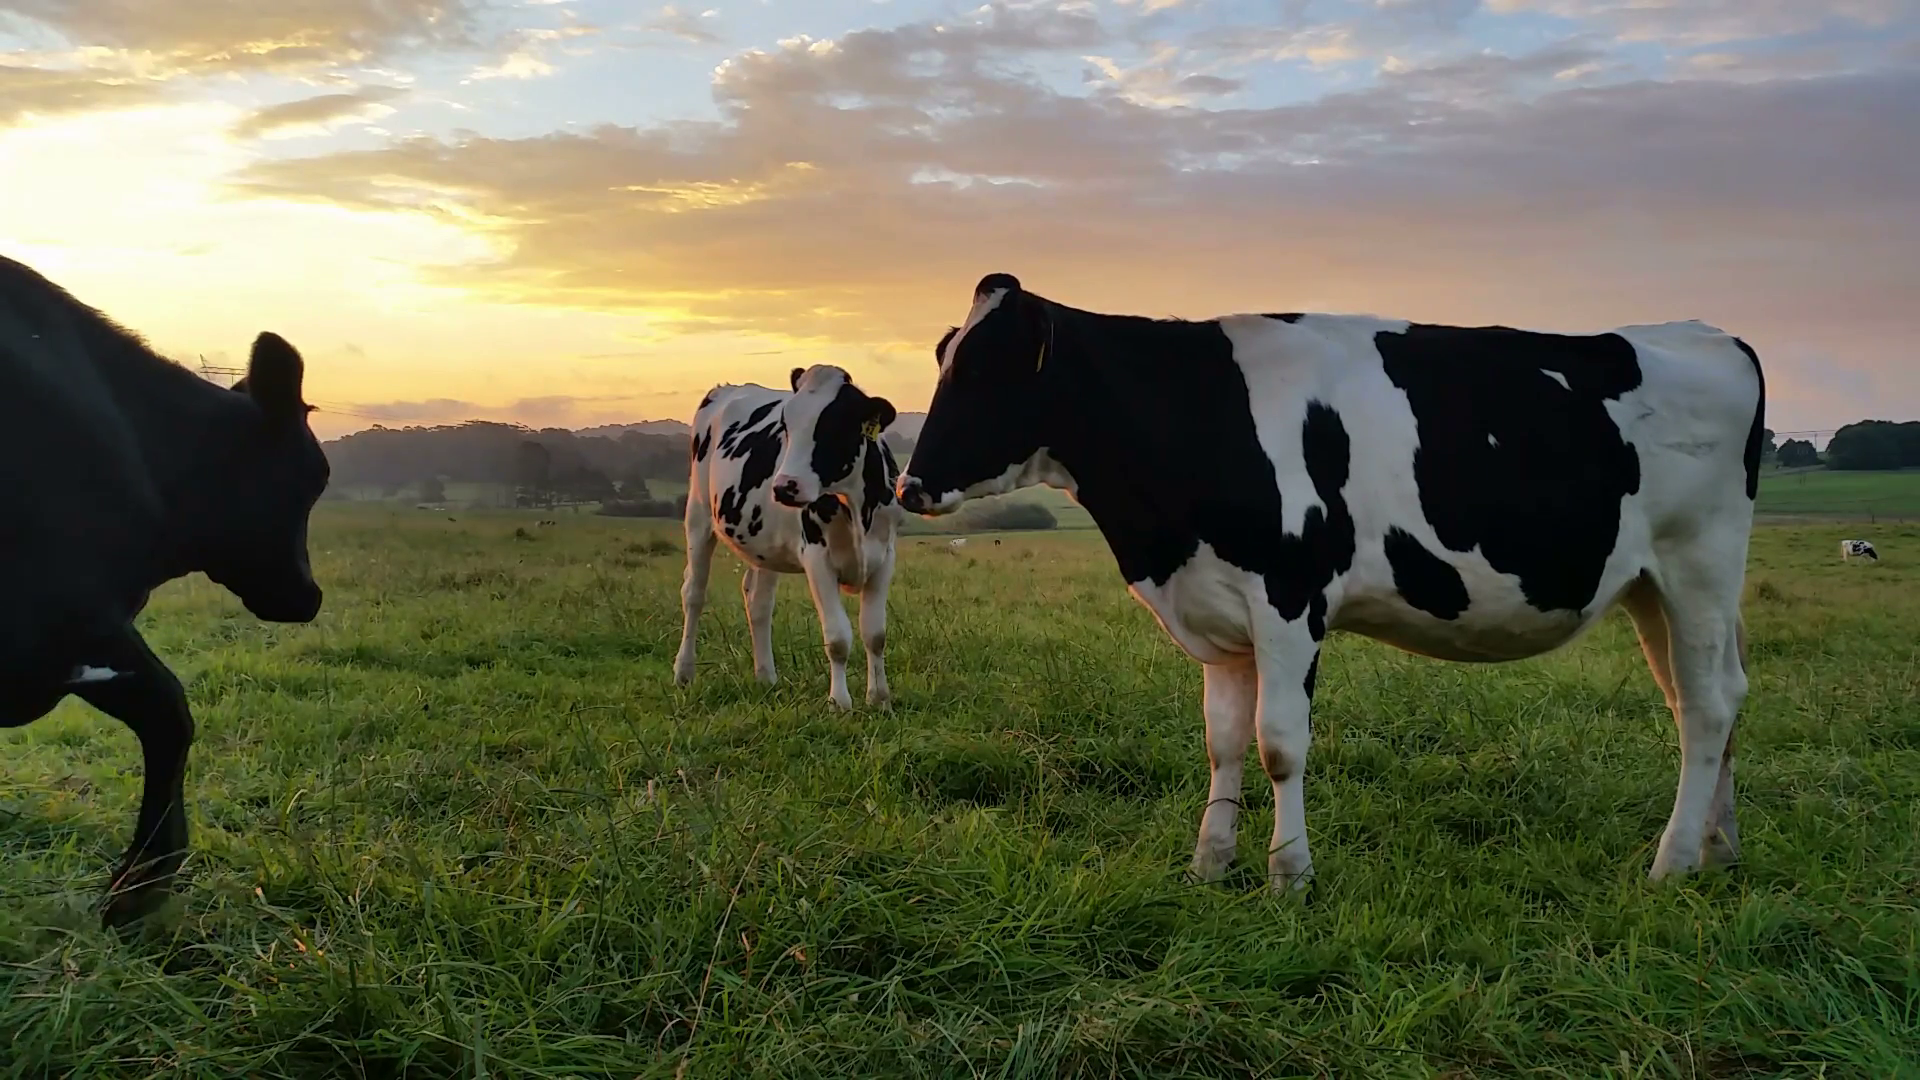 Holstein Friesian cattle High